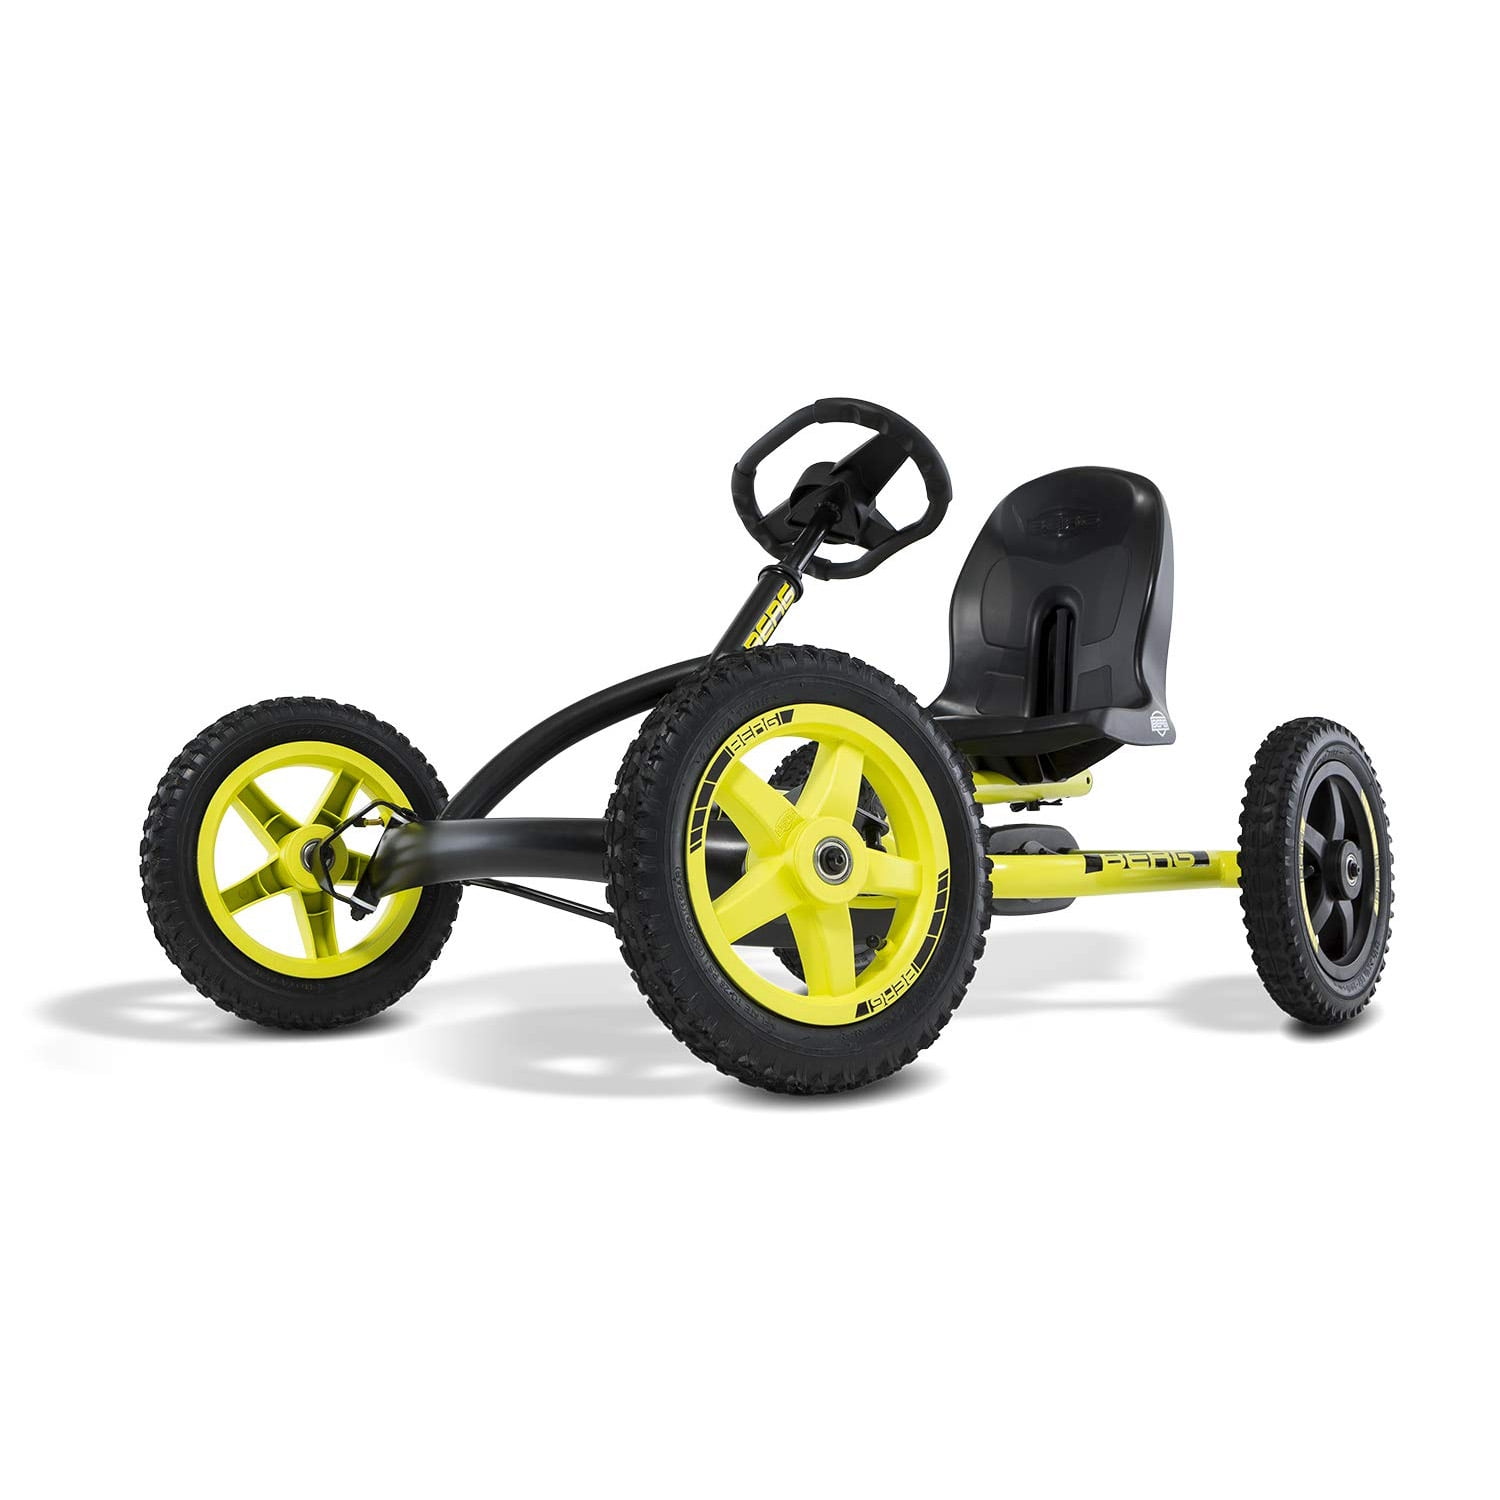 BERG Toys 15.20.45 Light Set for Pedal Go Kart, 